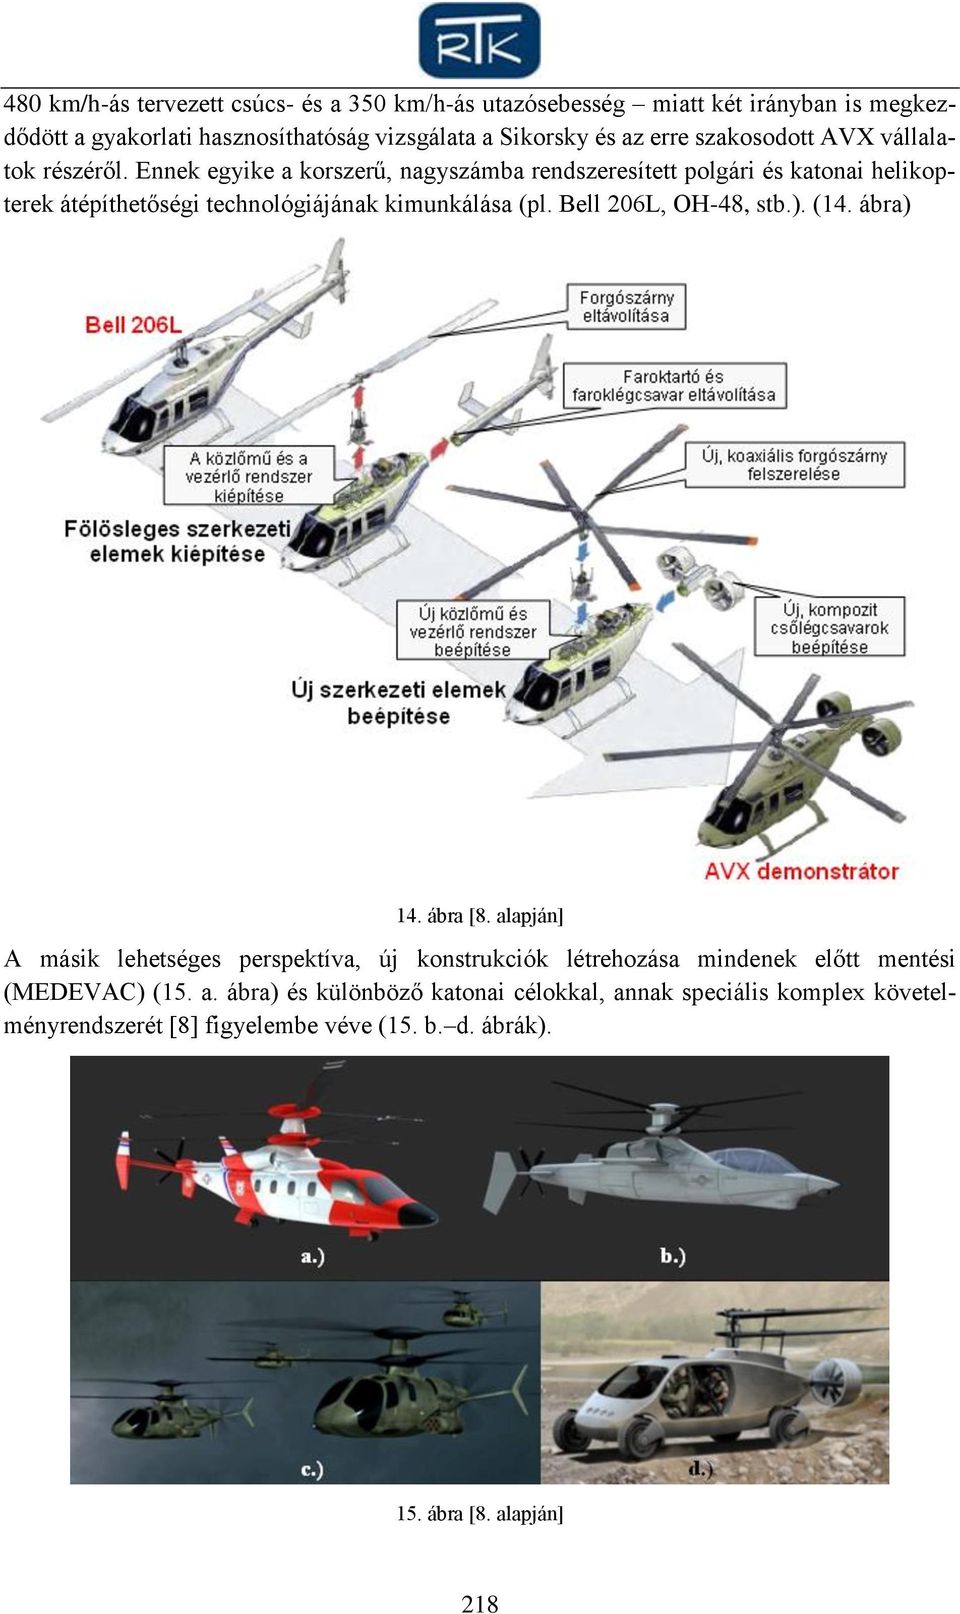 Ennek egyike a korszerű, nagyszámba rendszeresített polgári és katonai helikopterek átépíthetőségi technológiájának kimunkálása (pl. Bell 206L, OH-48, stb.).